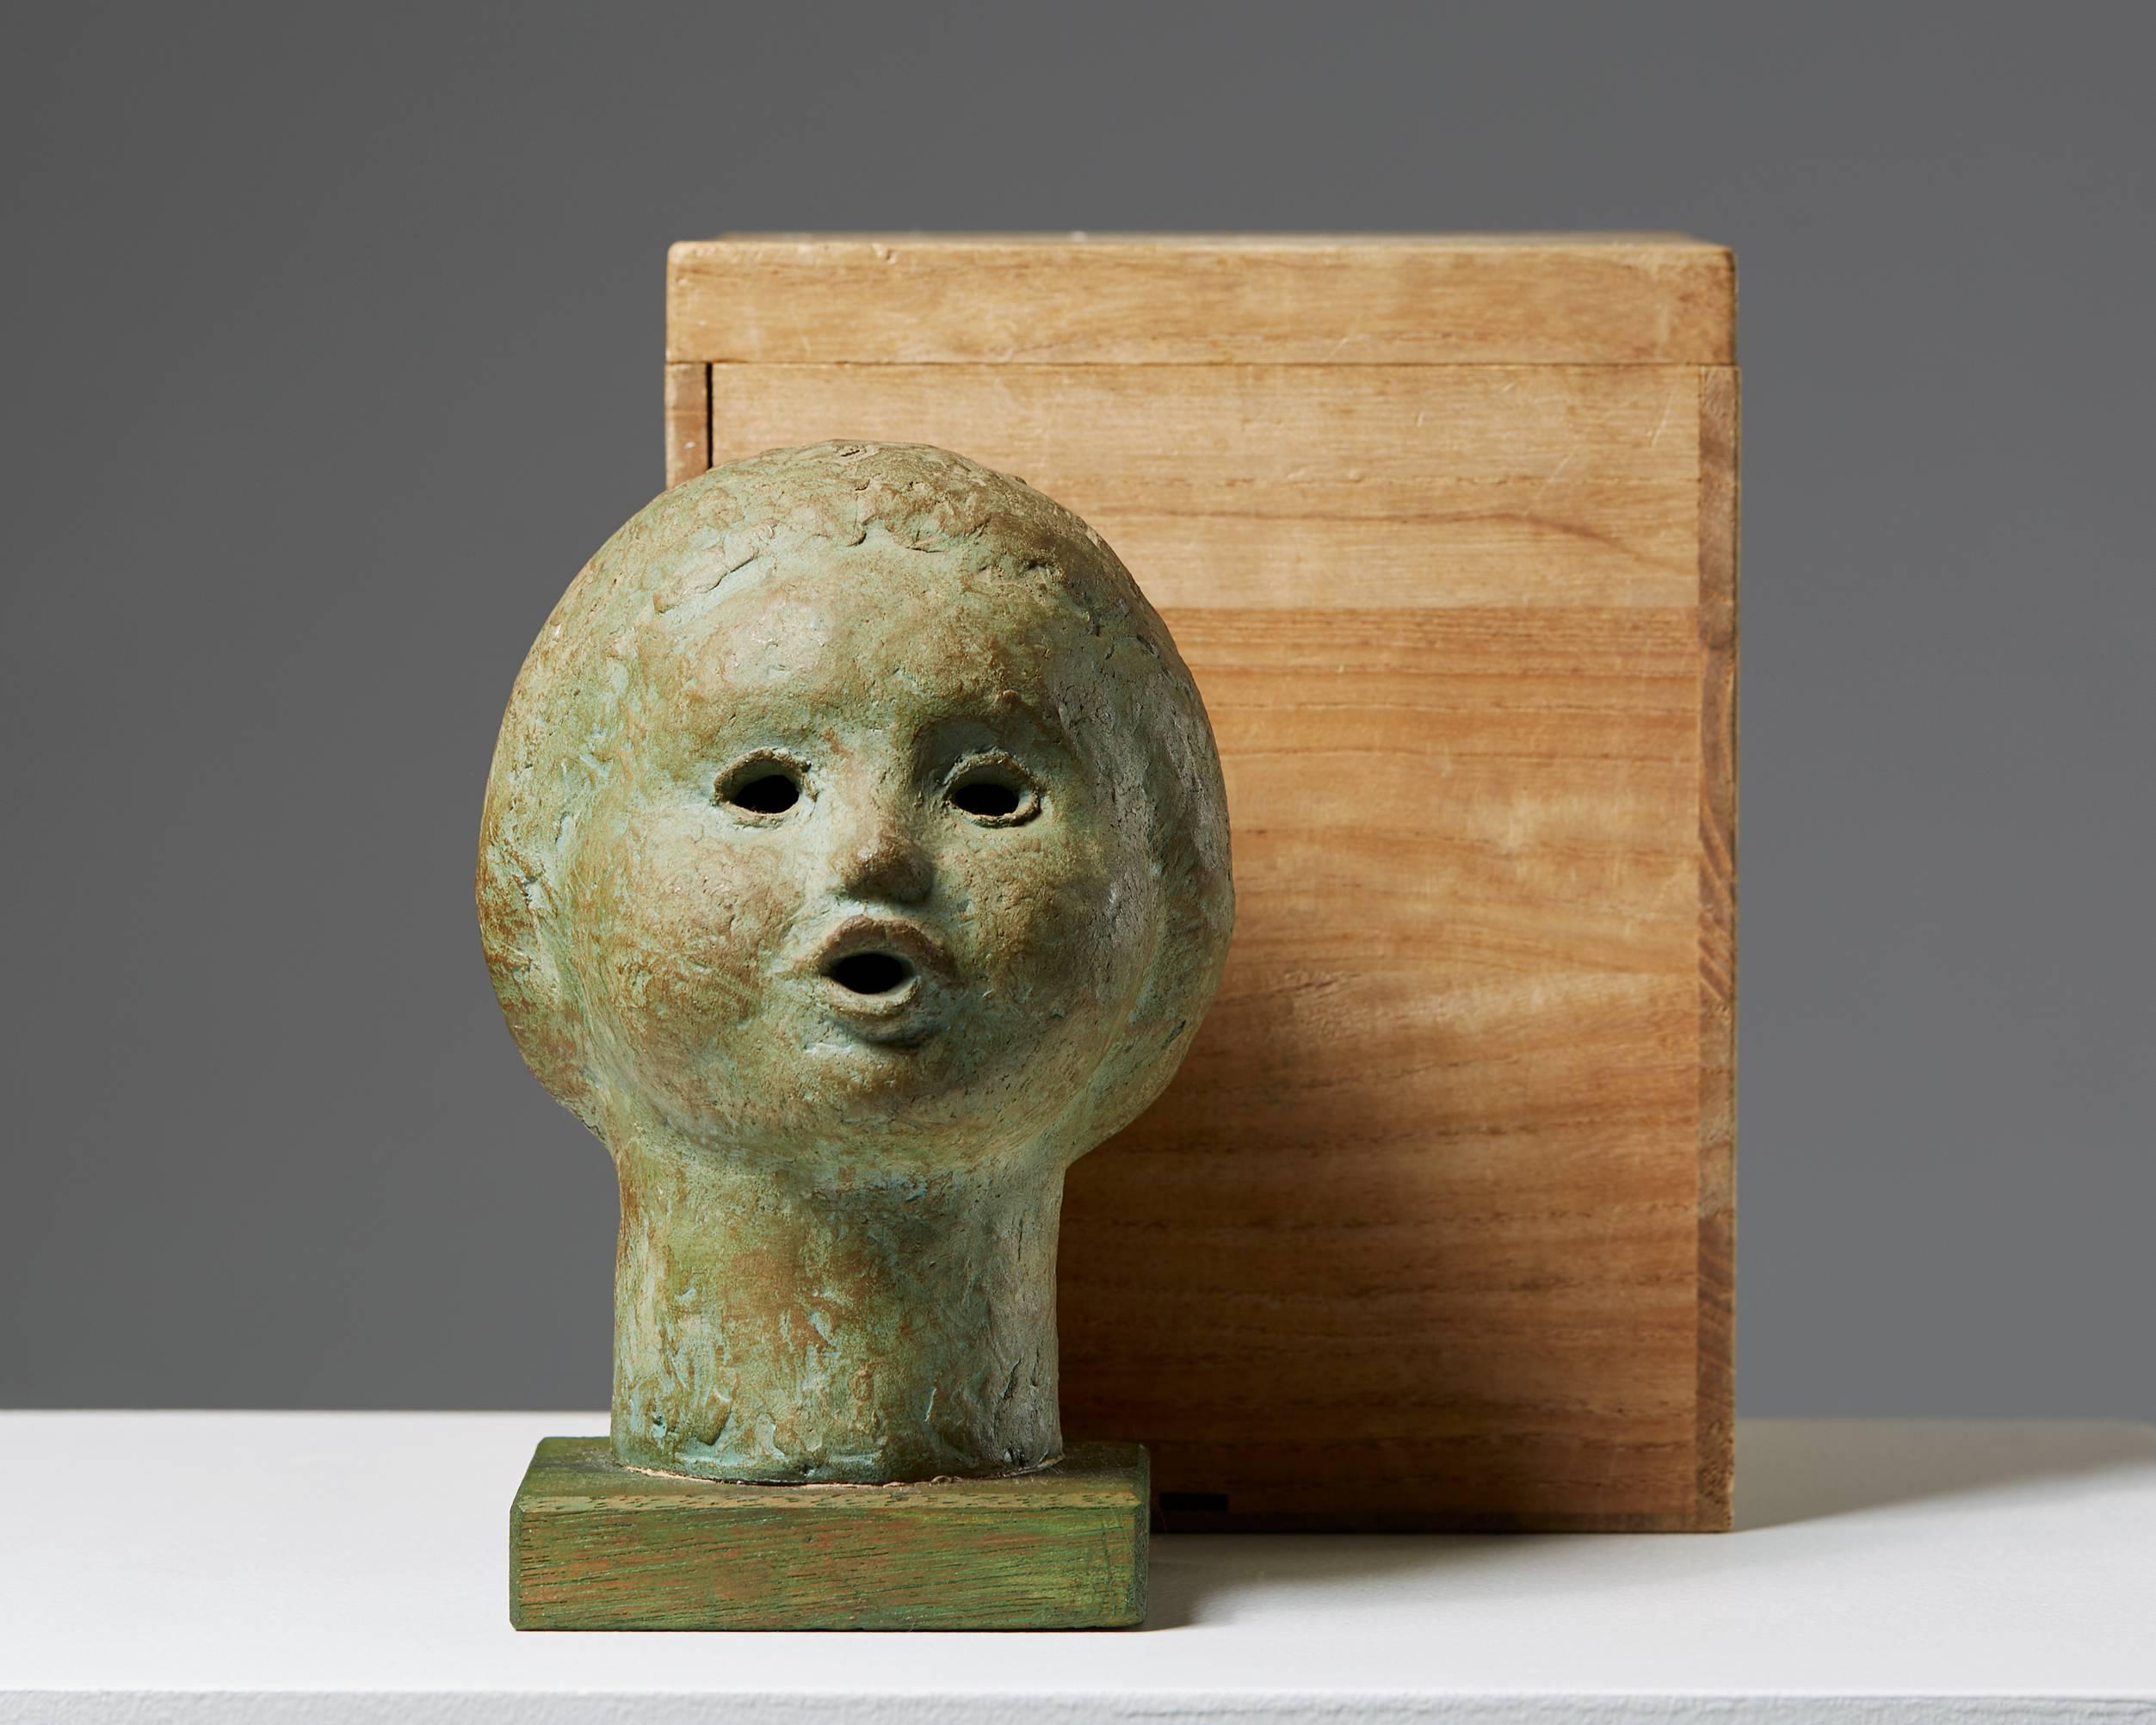 Sculpture, anonymous, 
Japan, 20th century. 
Stoneware.

Kiri box enclosed.

Measures: H 19 cm/ 7 1/2''
W 12 cm/ 4 3/4''
D 14 cm/ 5 1/2''.